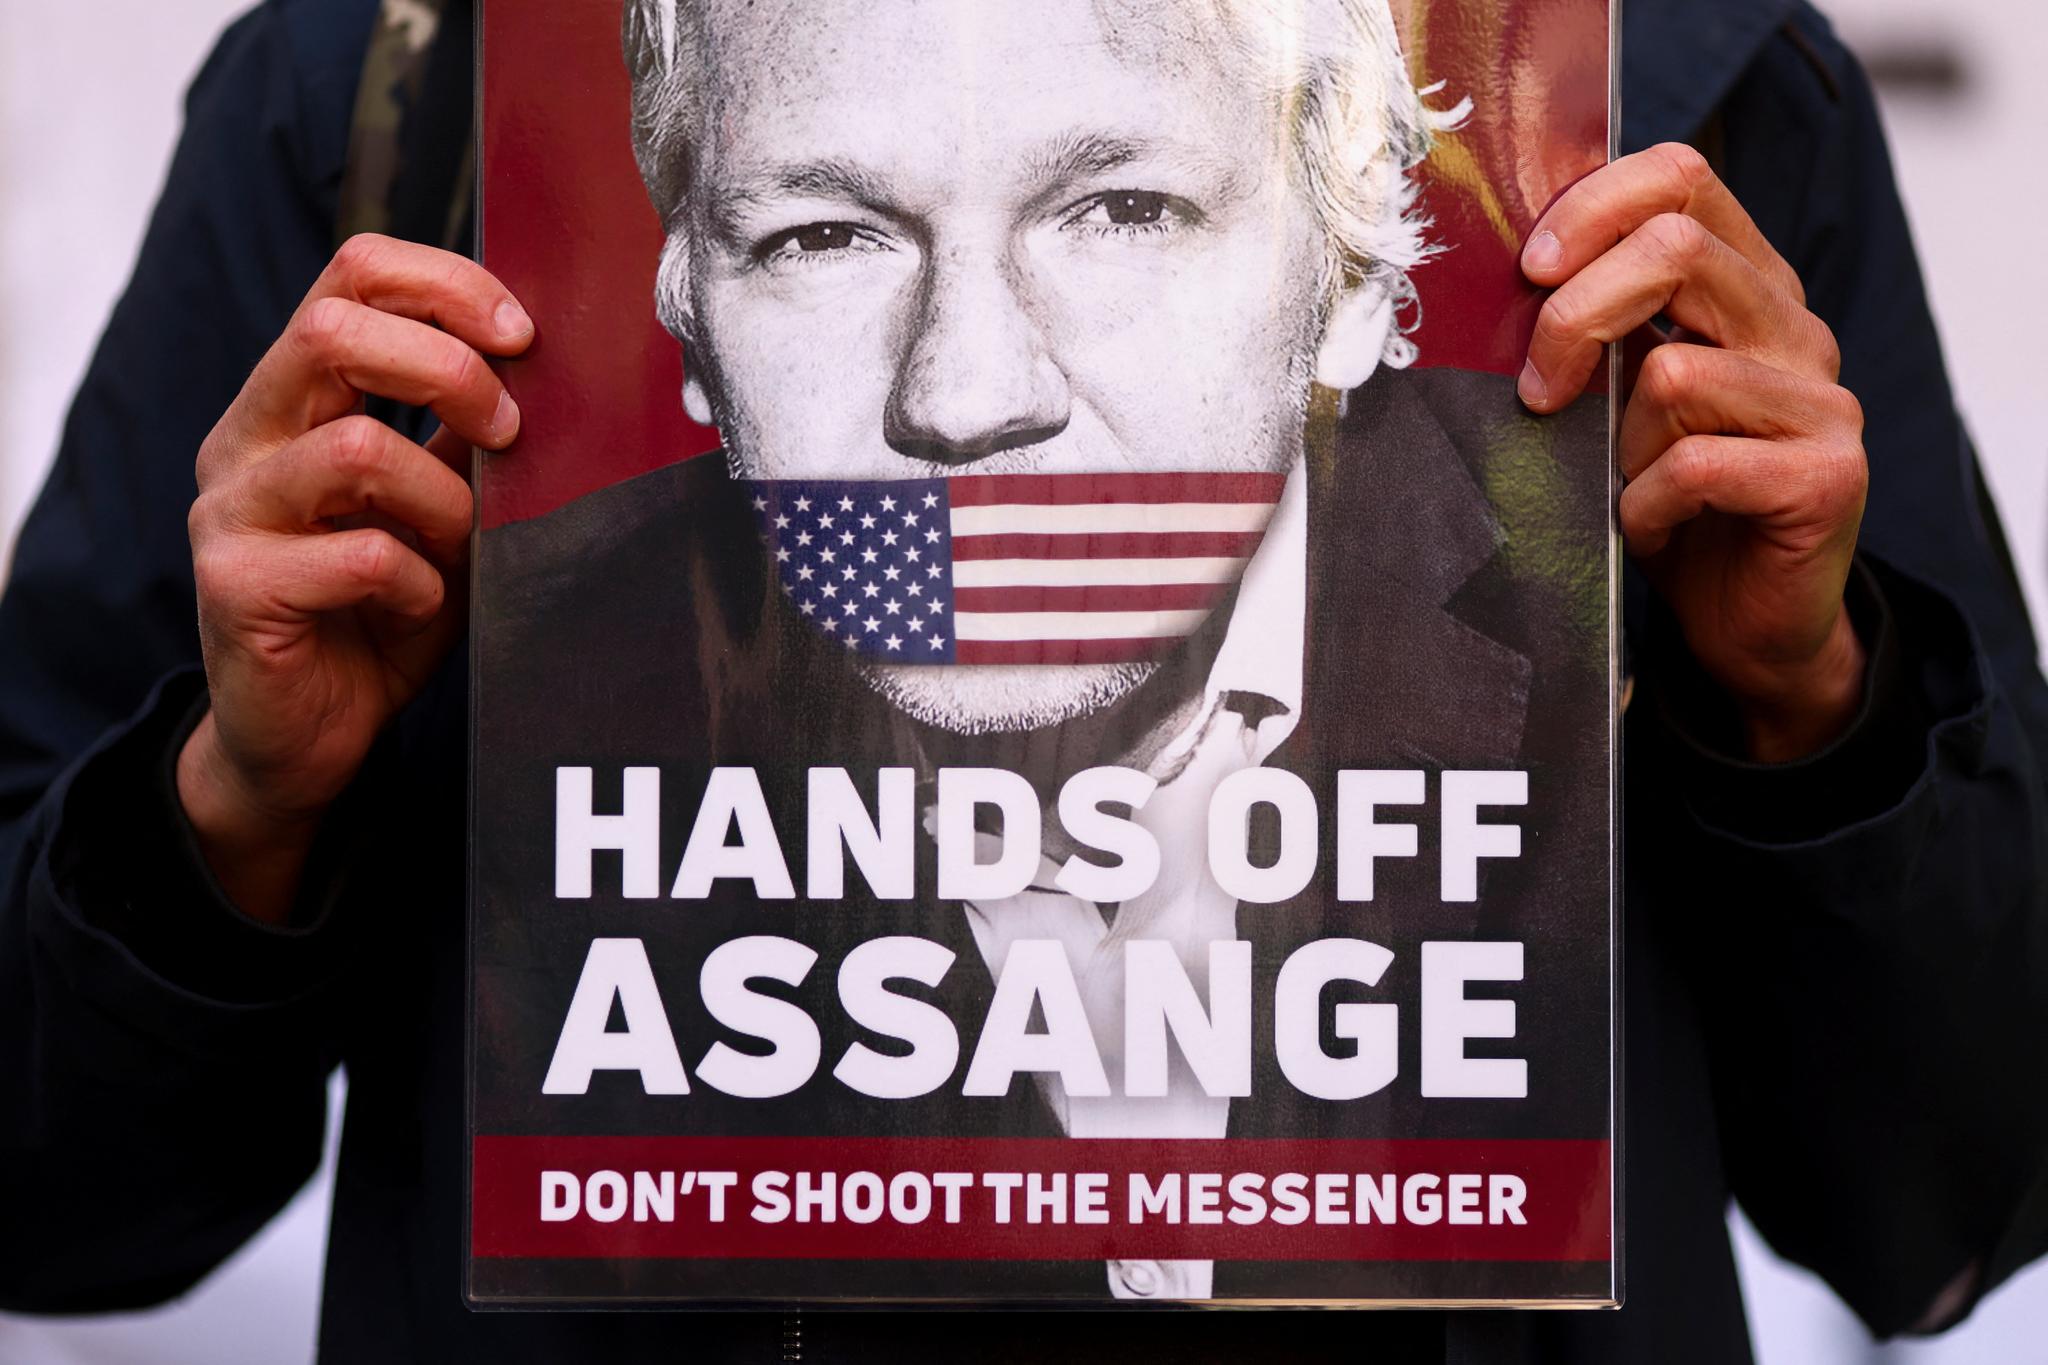 Julian Assange risikerer 175 års fengsel i USA for å ha publisert sann informasjon om krigsforbrytelser i Irak og Afghanistan gjennom Wikileaks i 2010, skriver Rune Ottosen.